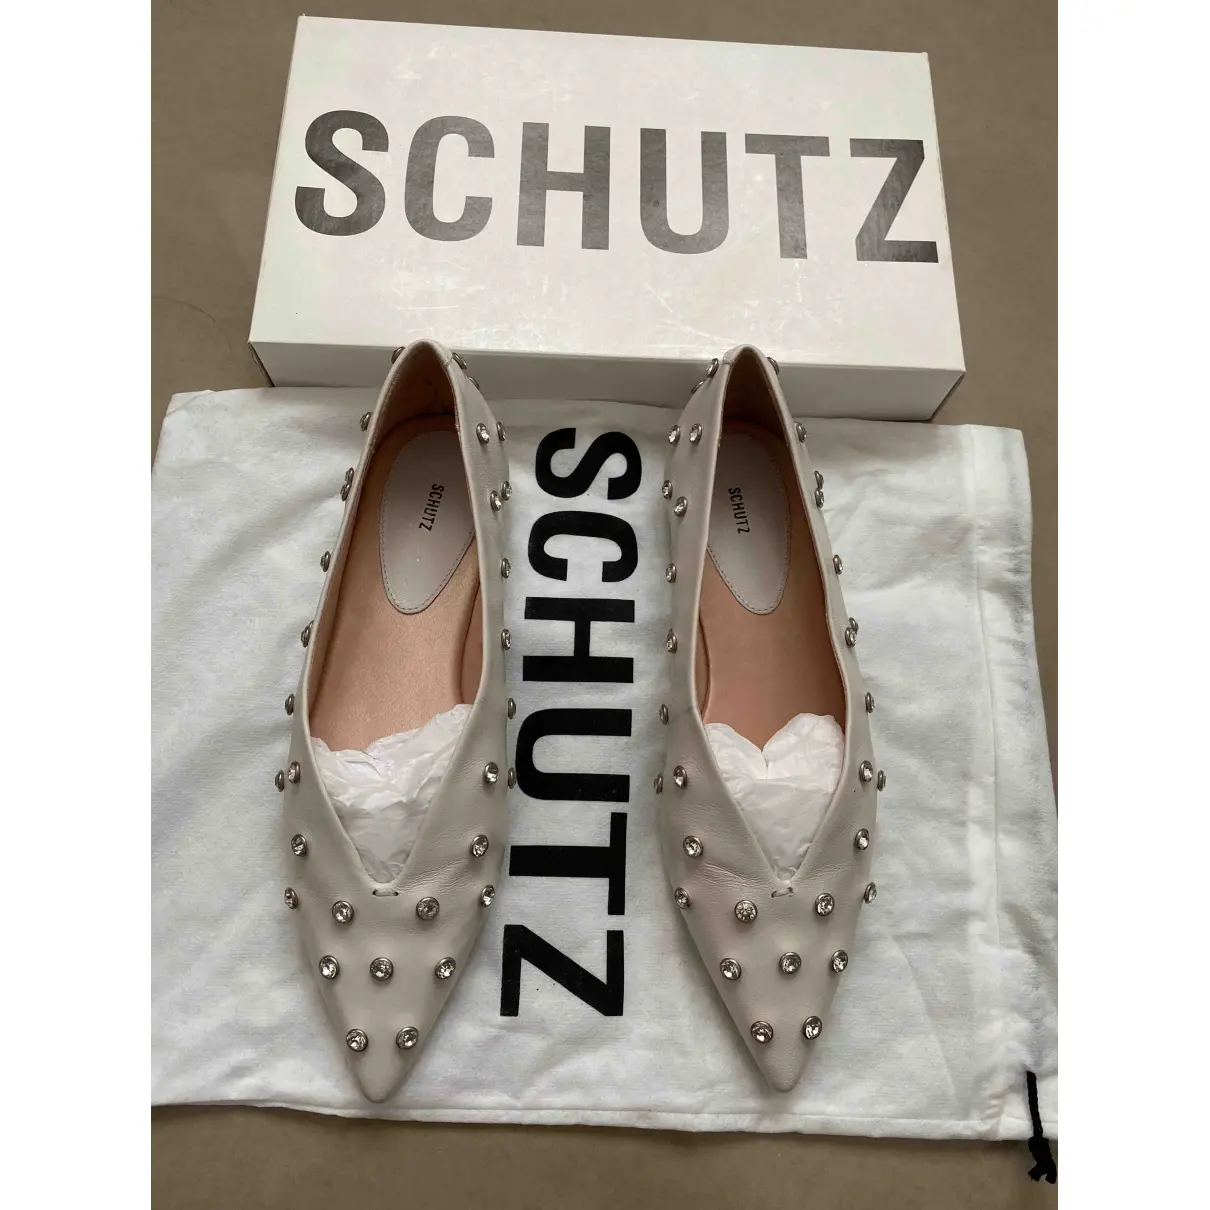 Buy Schutz Leather ballet flats online